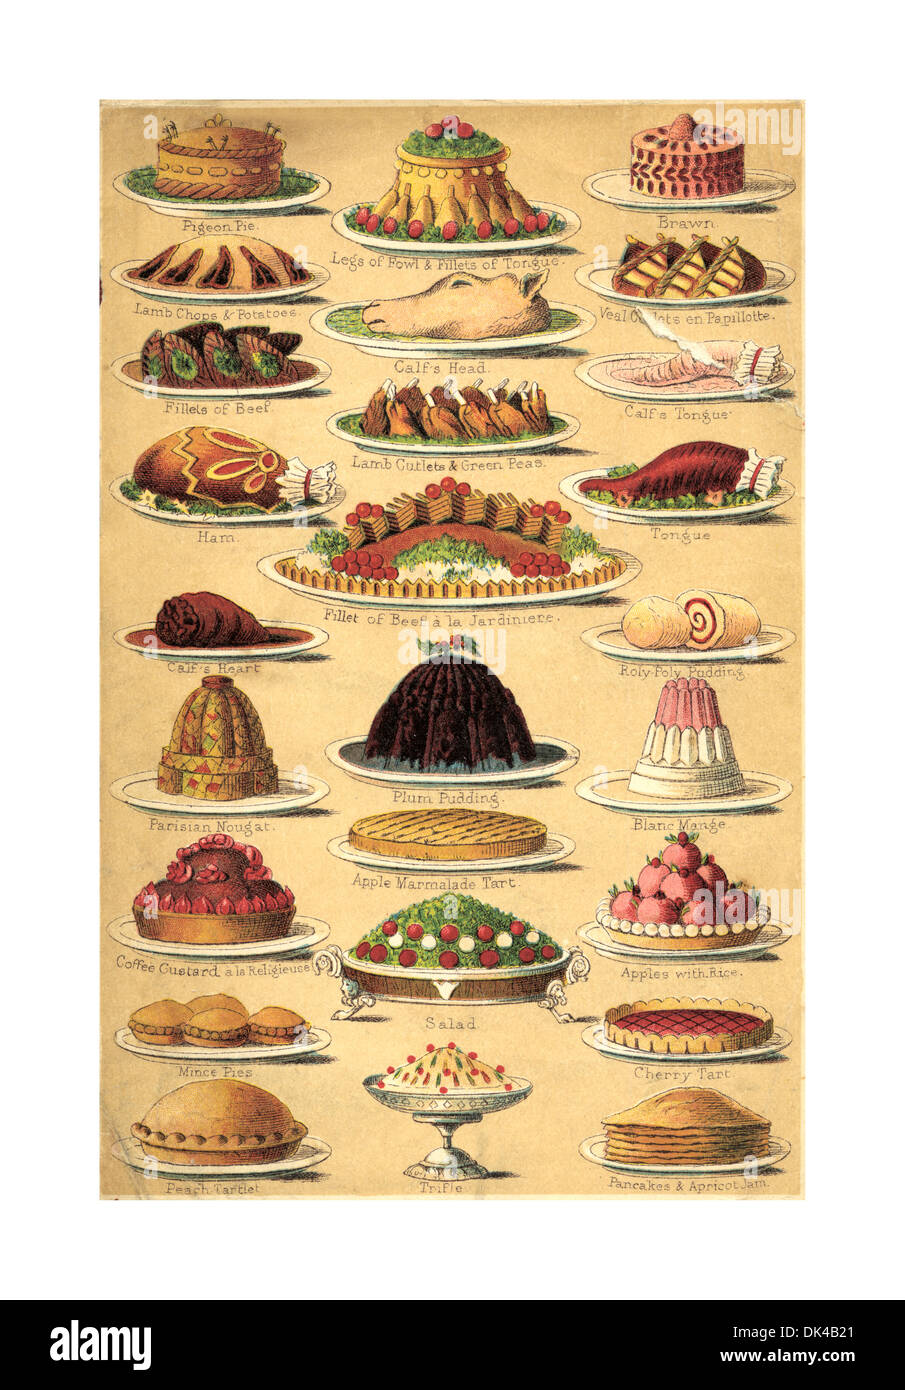 VICTORIAN CHRISTMAS PUDDING Vintage Kochbuch Lithographie Seite 1890 illustriert verschiedene Weihnachten Lebensmitteln einschließlich Torten Pudding Kuchen & Fleisch Stockfoto